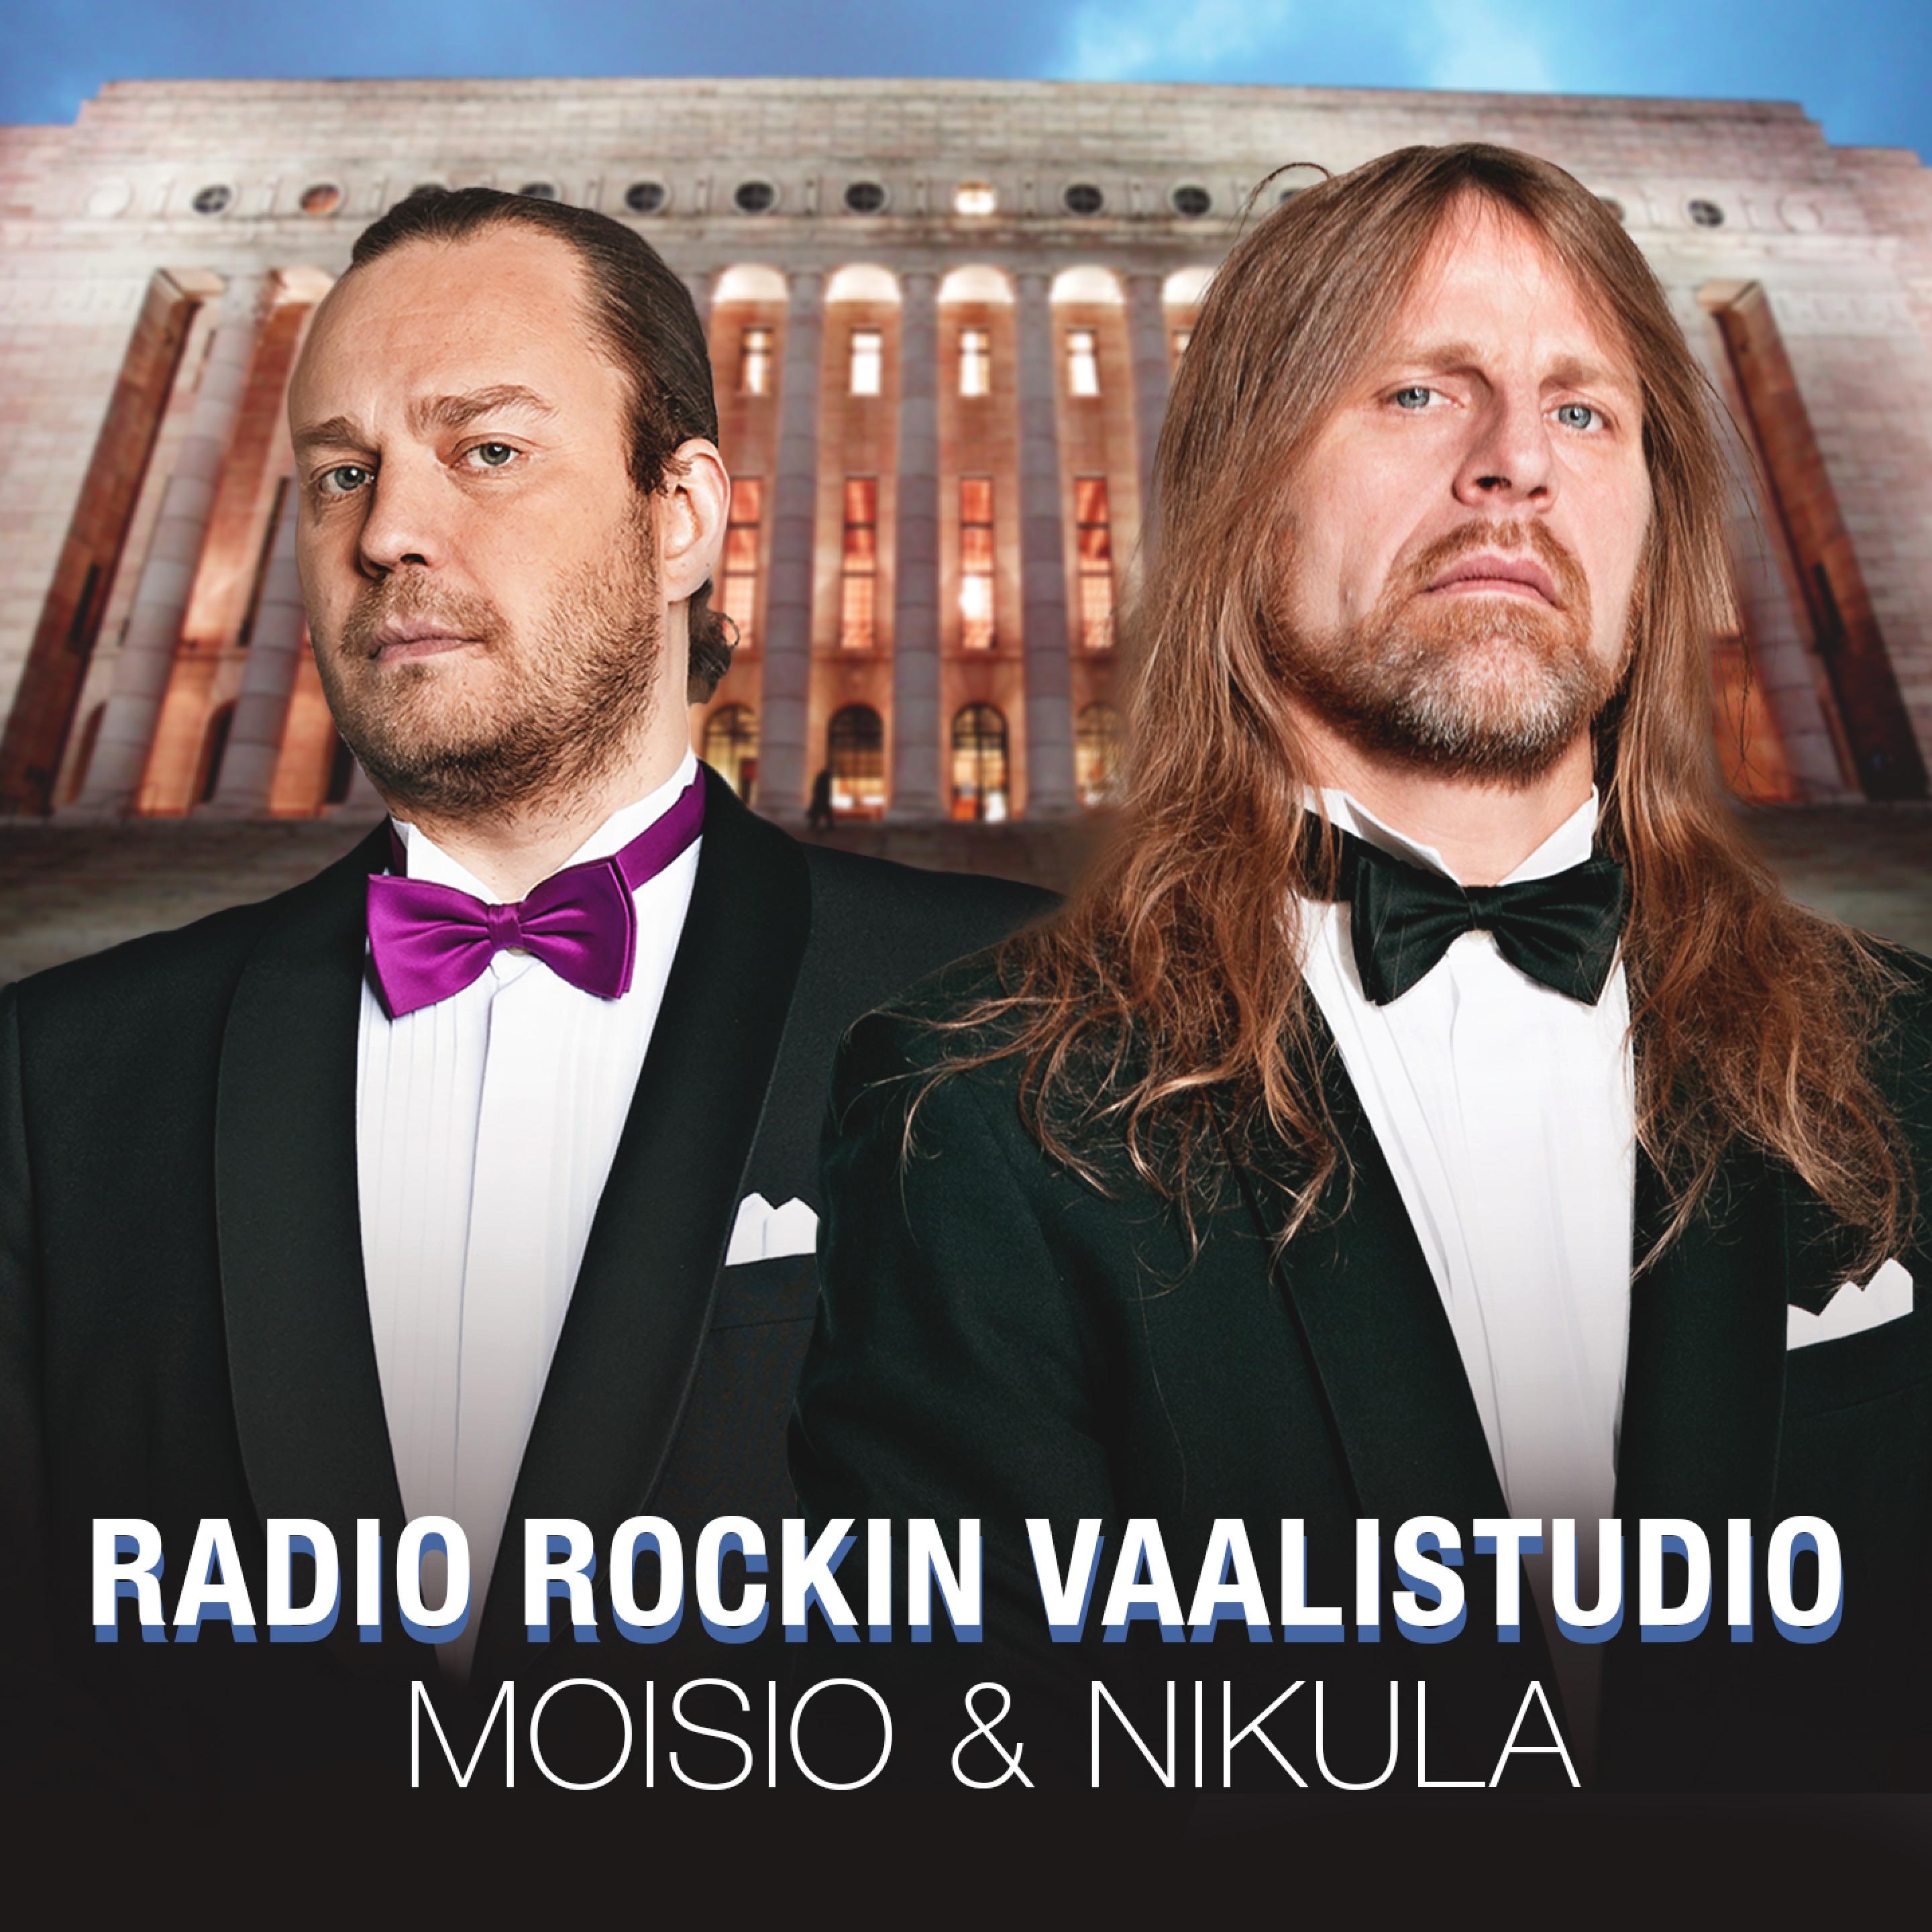 Radio rockin vaalistudio - Pekka Haavisto